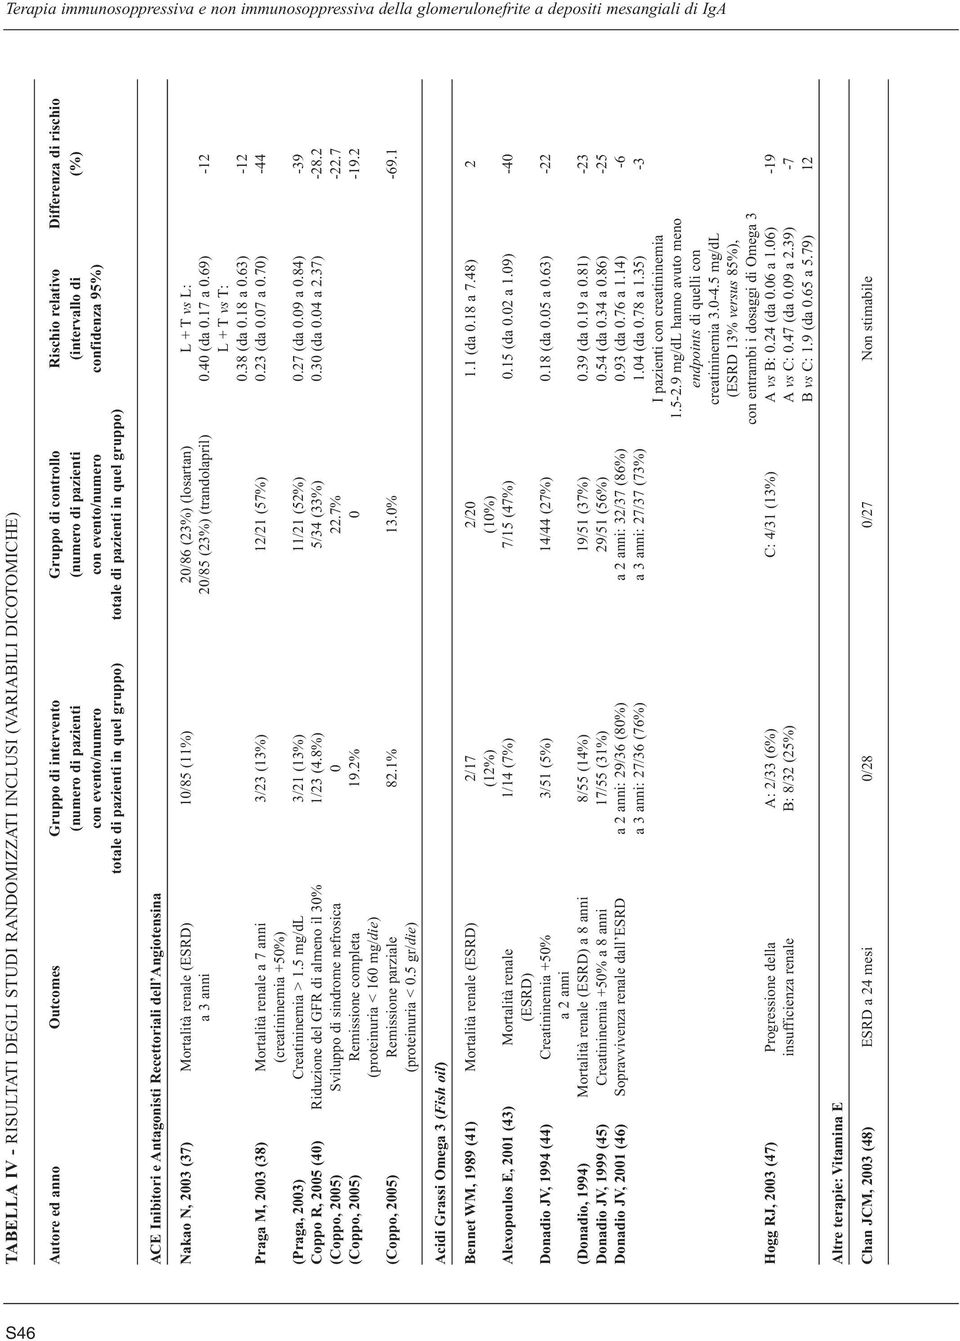 Recettoriali dell Angiotensina Nakao N, 2003 (37) Mortalità renale (ESRD) 10/85 (11%) 20/86 (23%) (losartan) L + T vs L: a 3 anni 20/85 (23%) (trandolapril) 0.40 (da 0.17 a 0.69) -12 L + T vs T: 0.